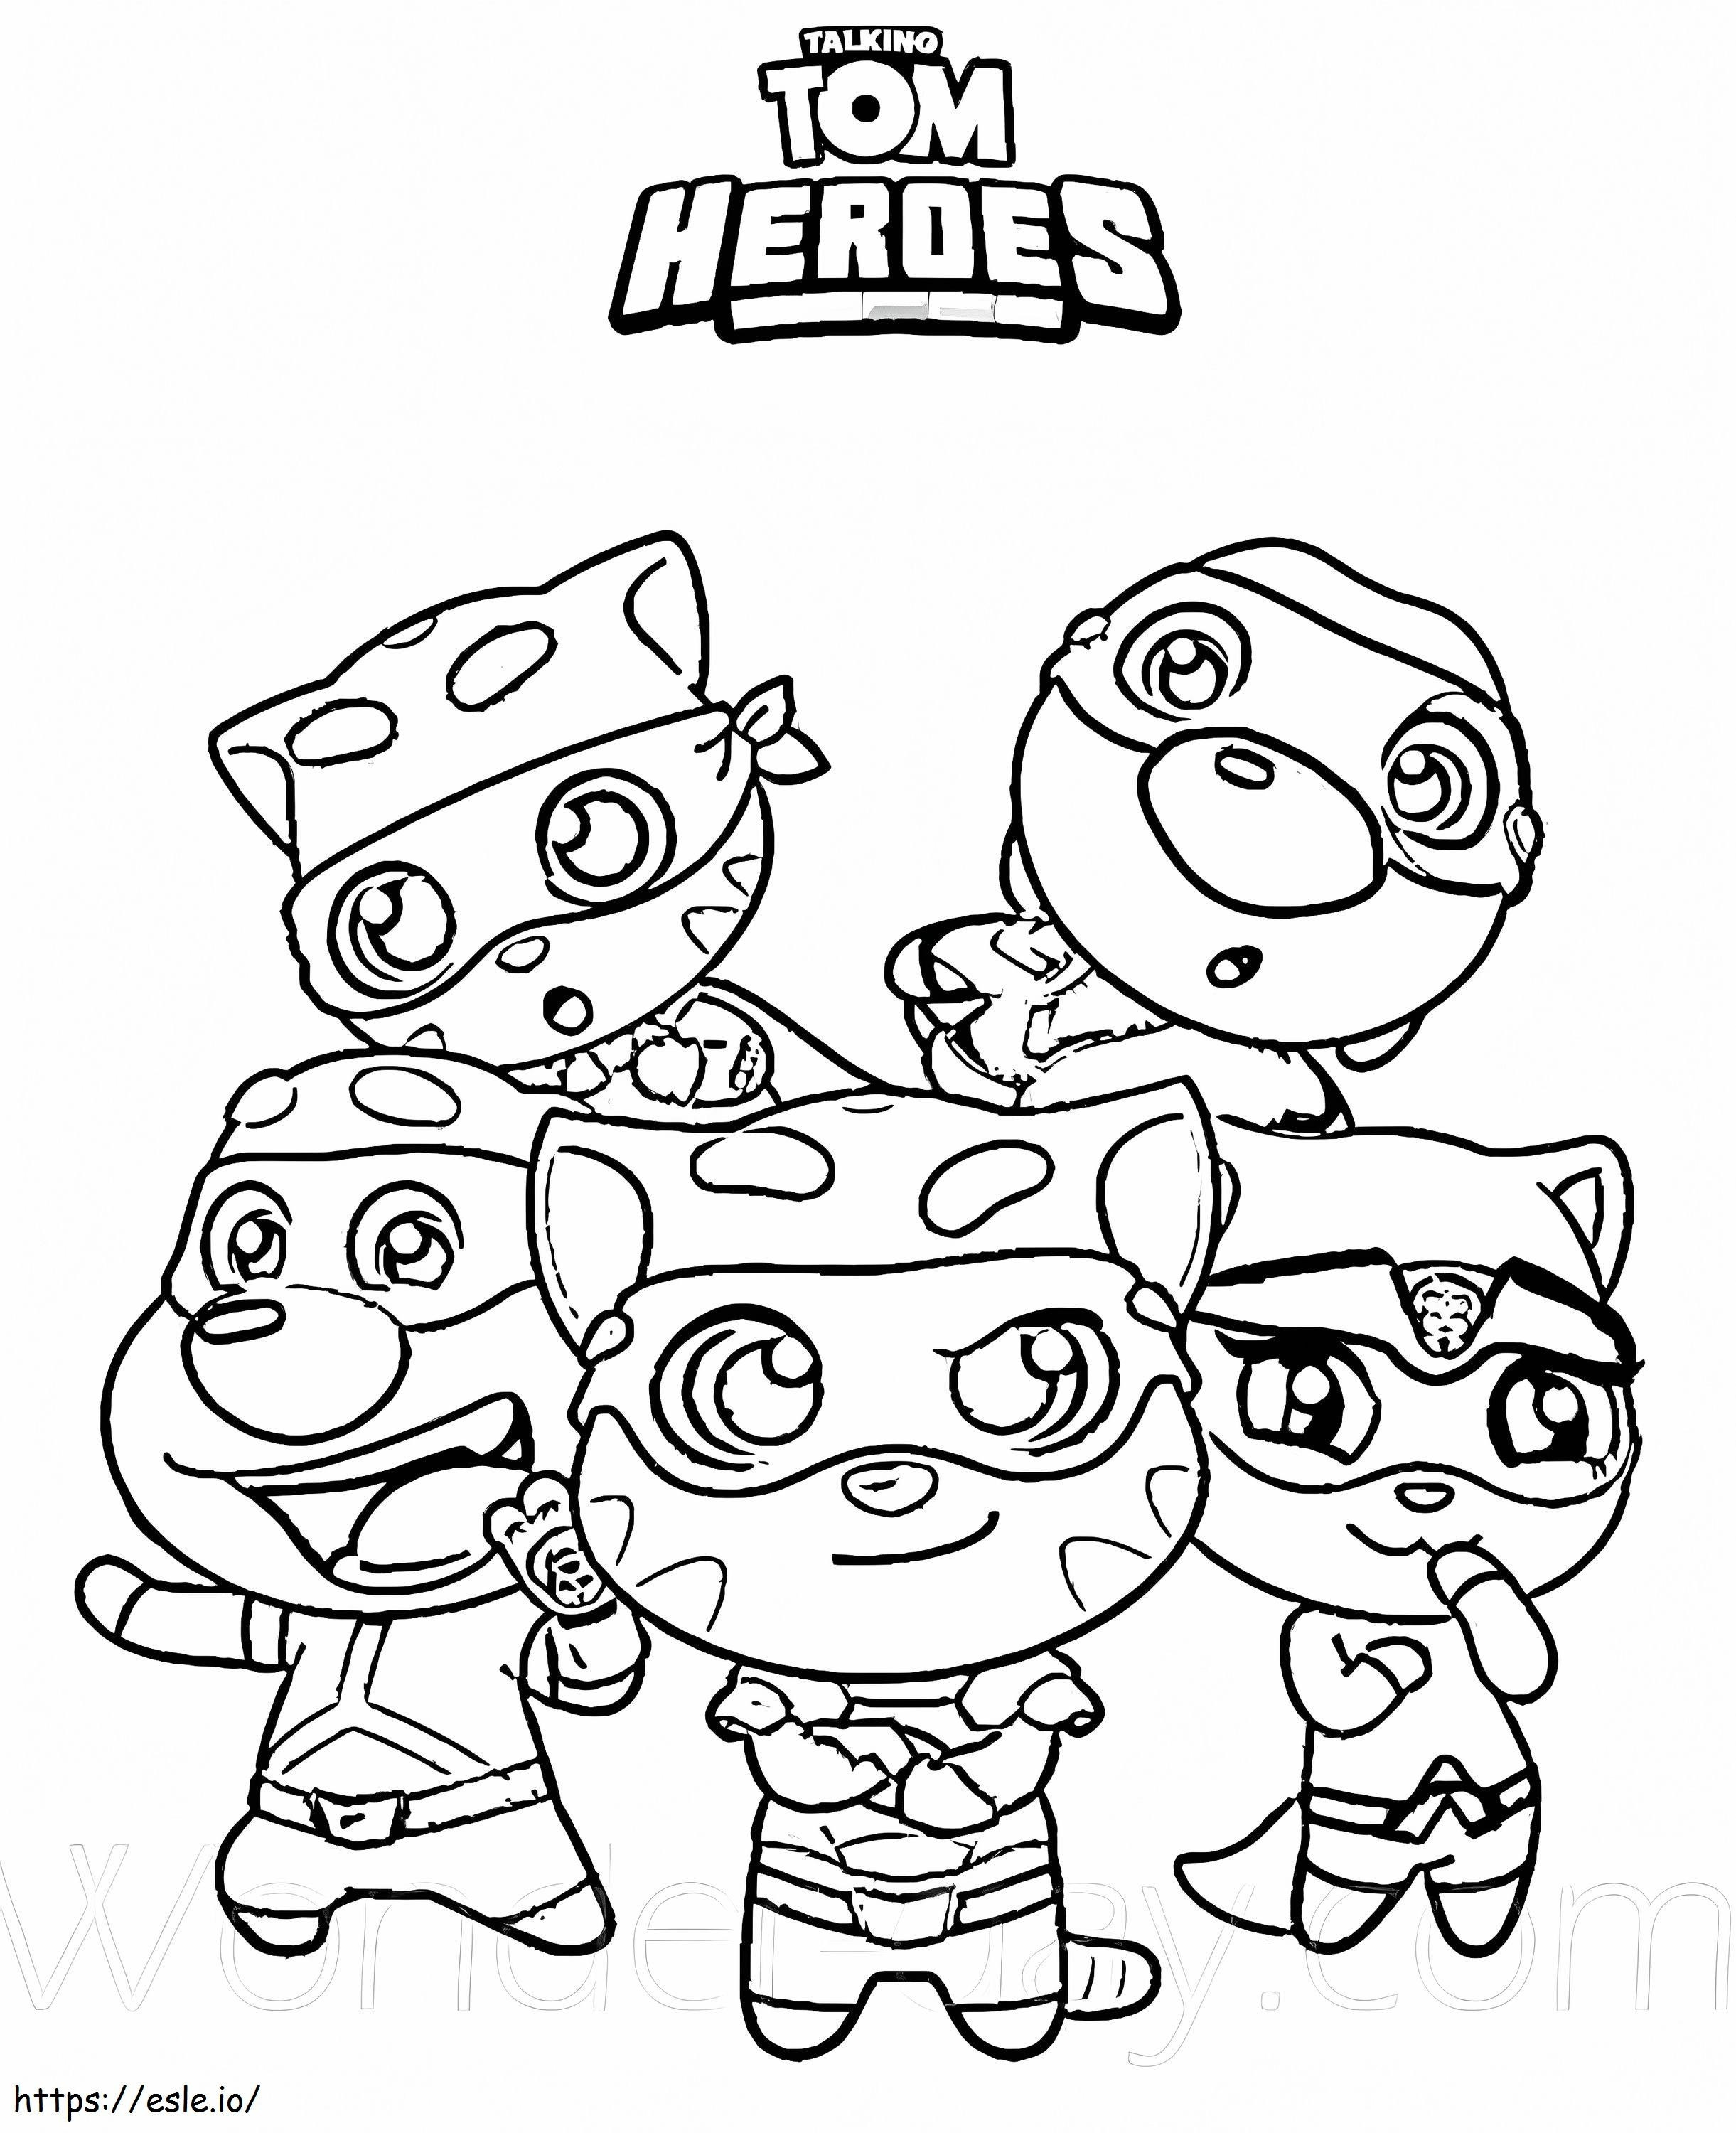 Talking Heroes-team kleurplaat kleurplaat